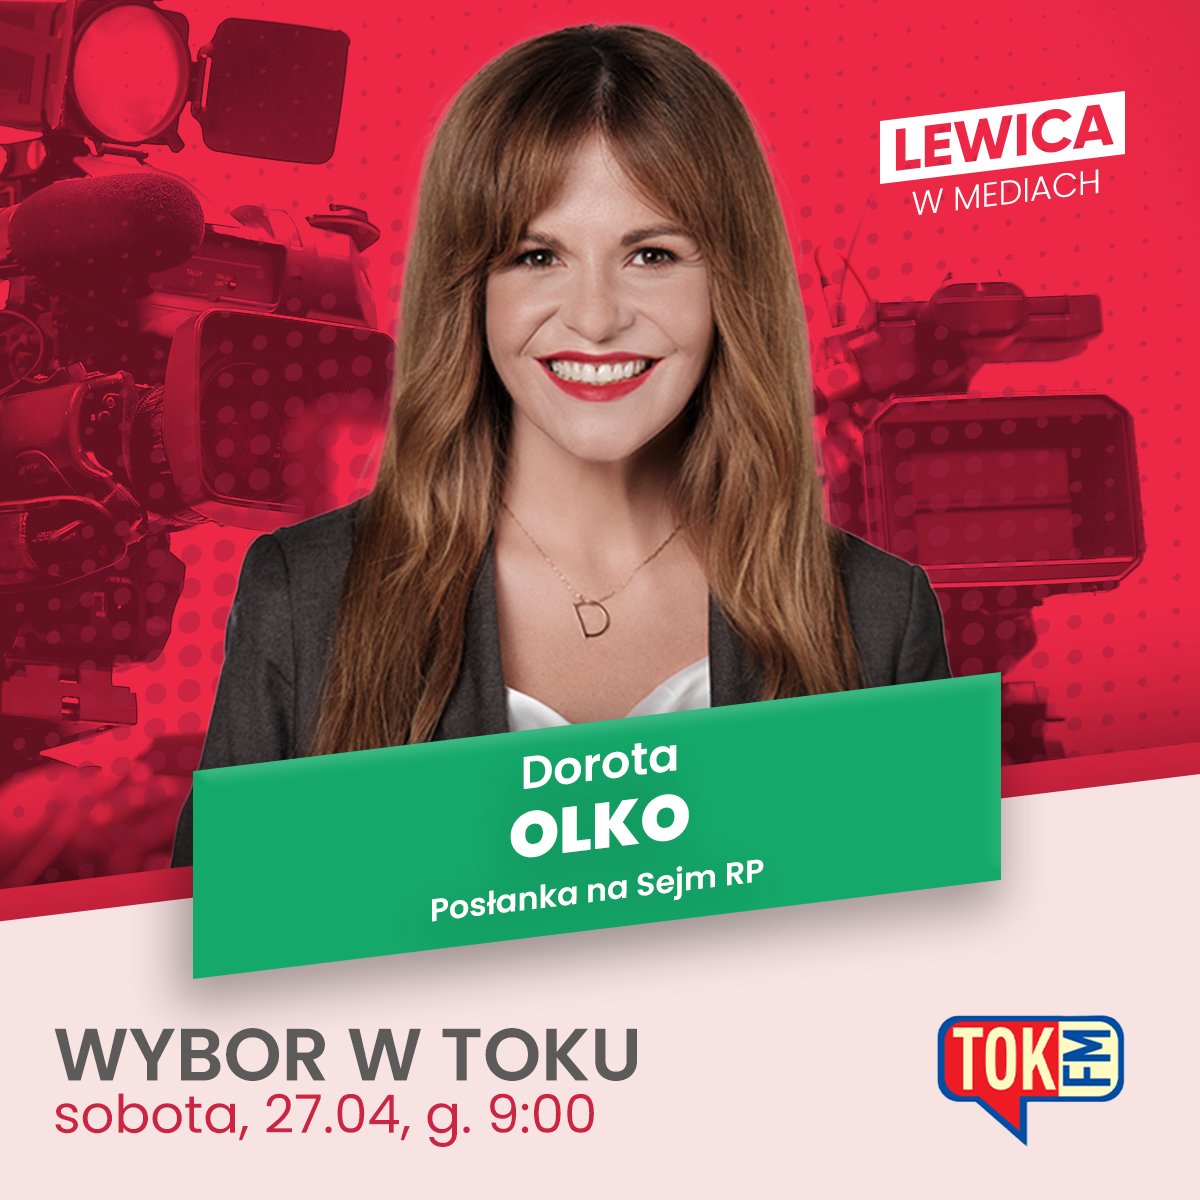 📻 Posłanka @dorota_olko jutro o 9:00 będzie gościnią audycji #WyboryWTOKu w @Radio_TOK_FM #LewicaWMediach